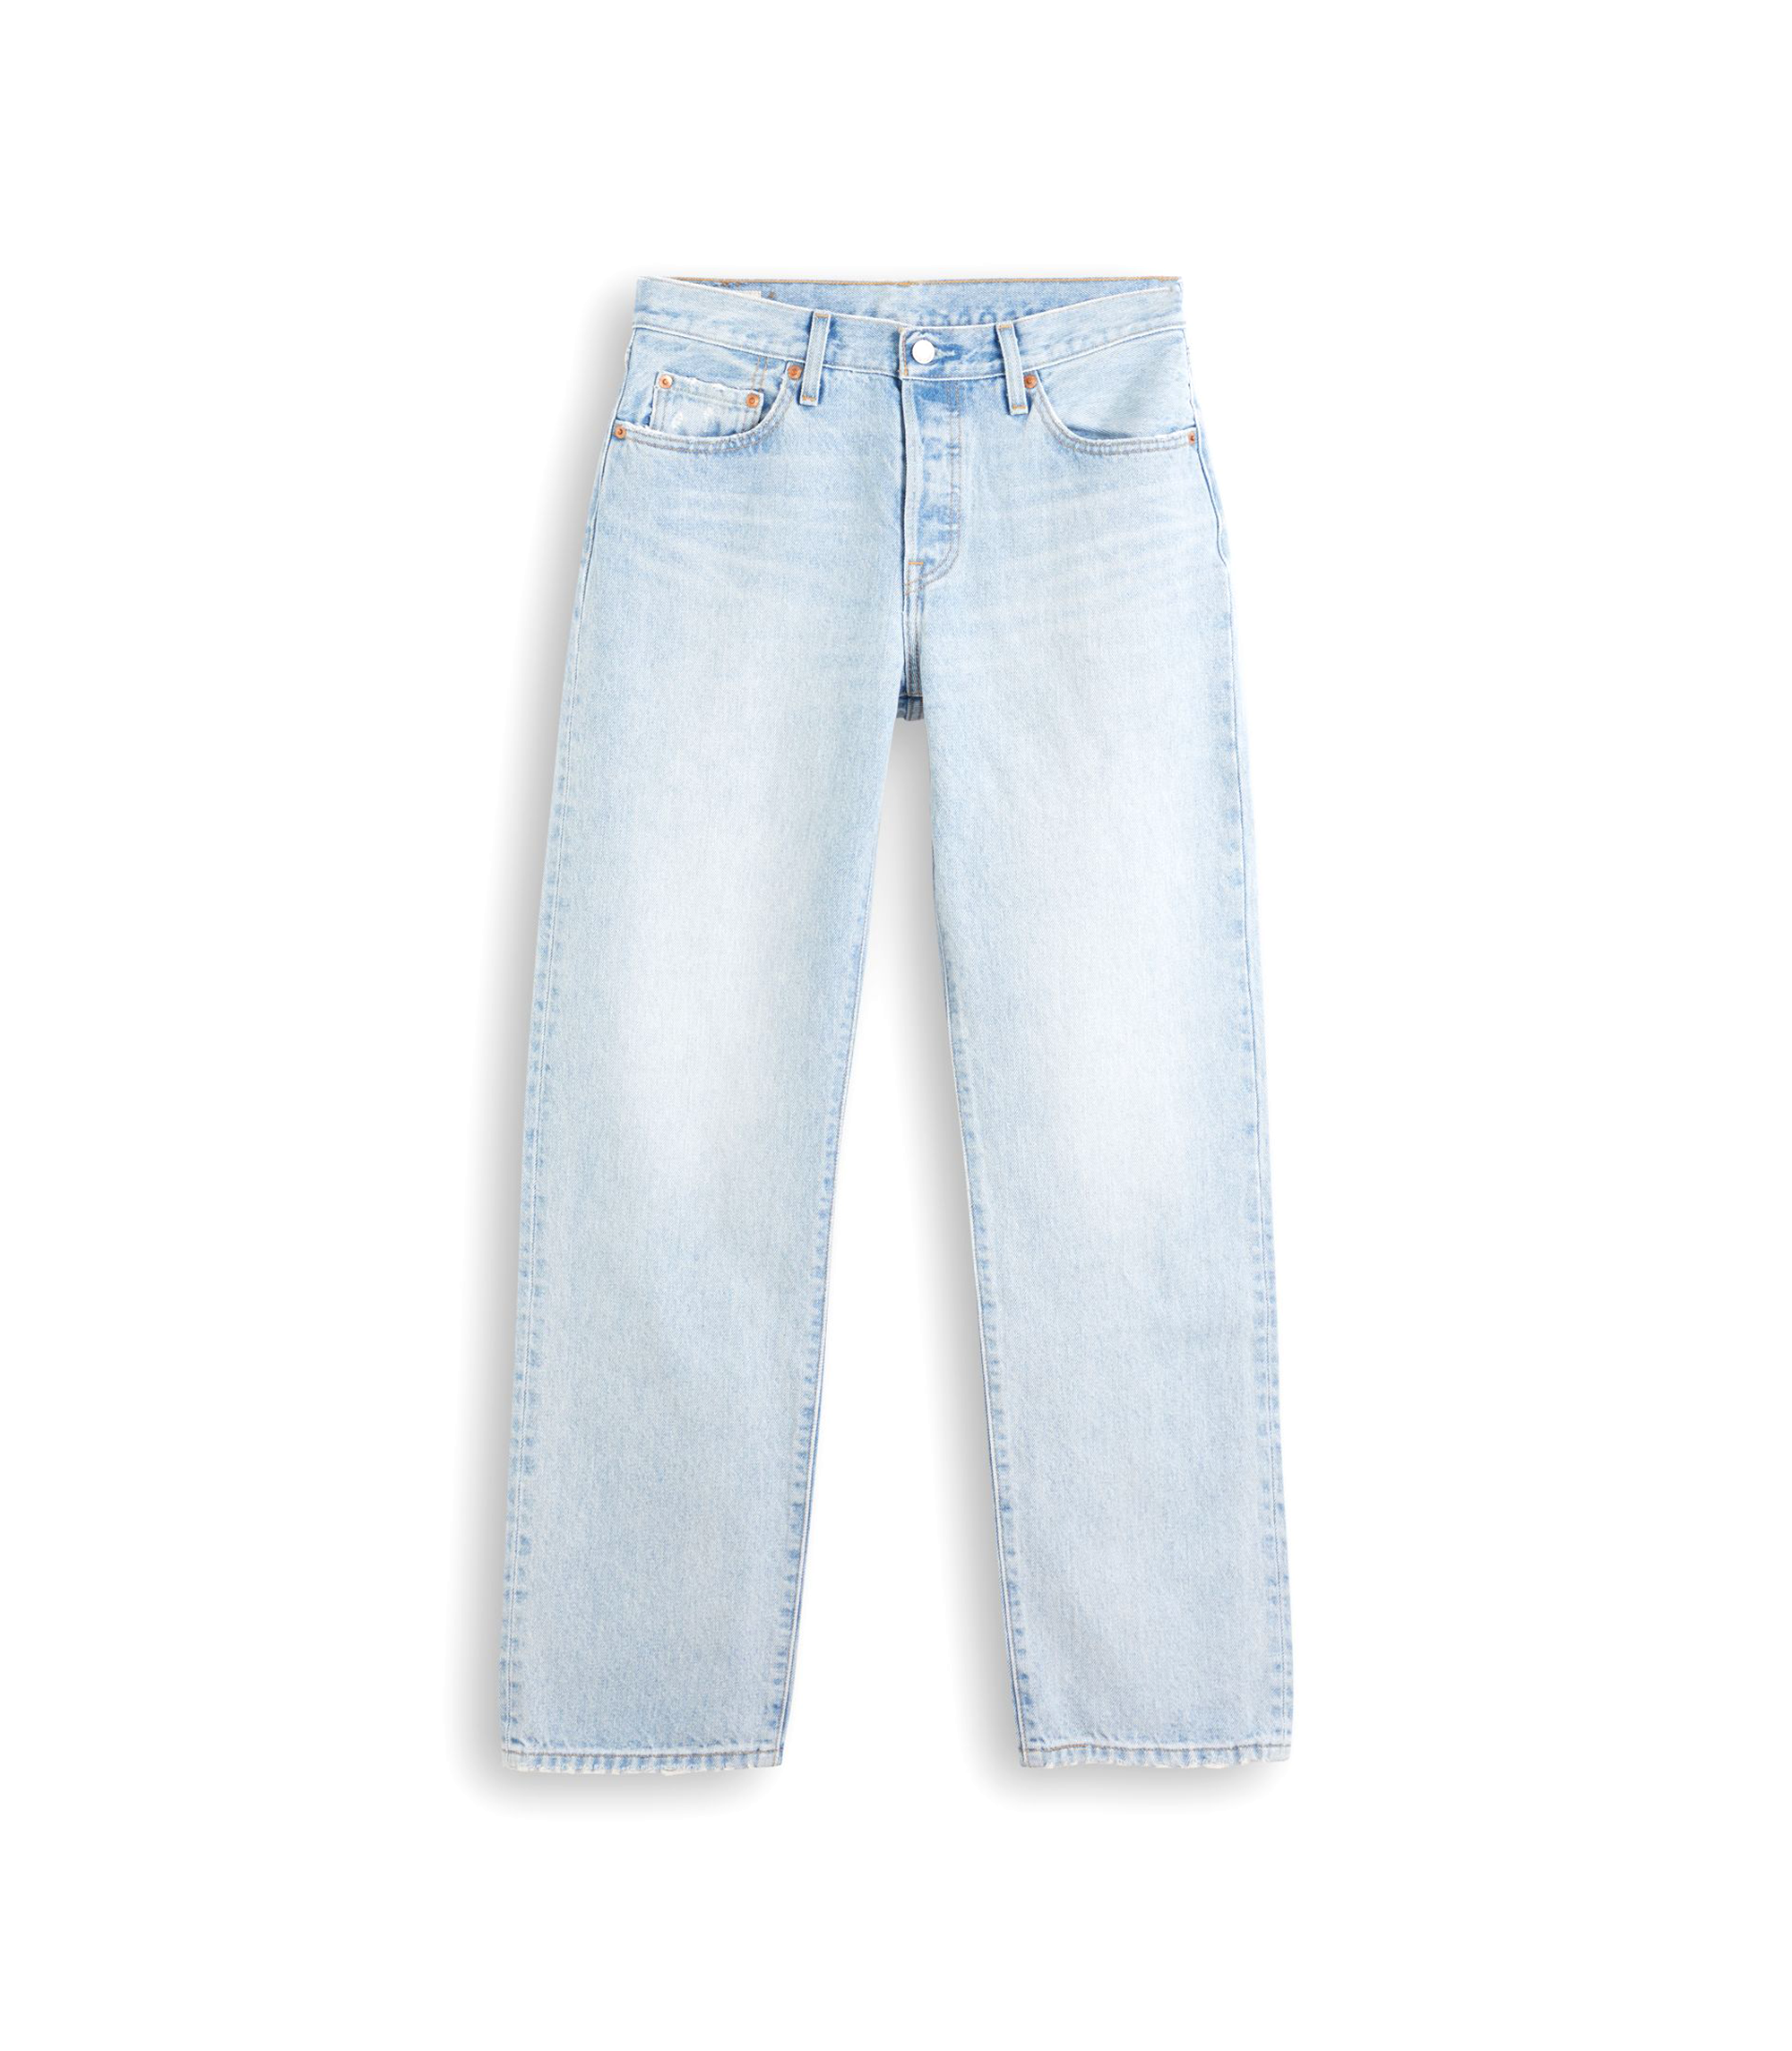 Womens 90s 501 Jeans - Light indigo / Worn In